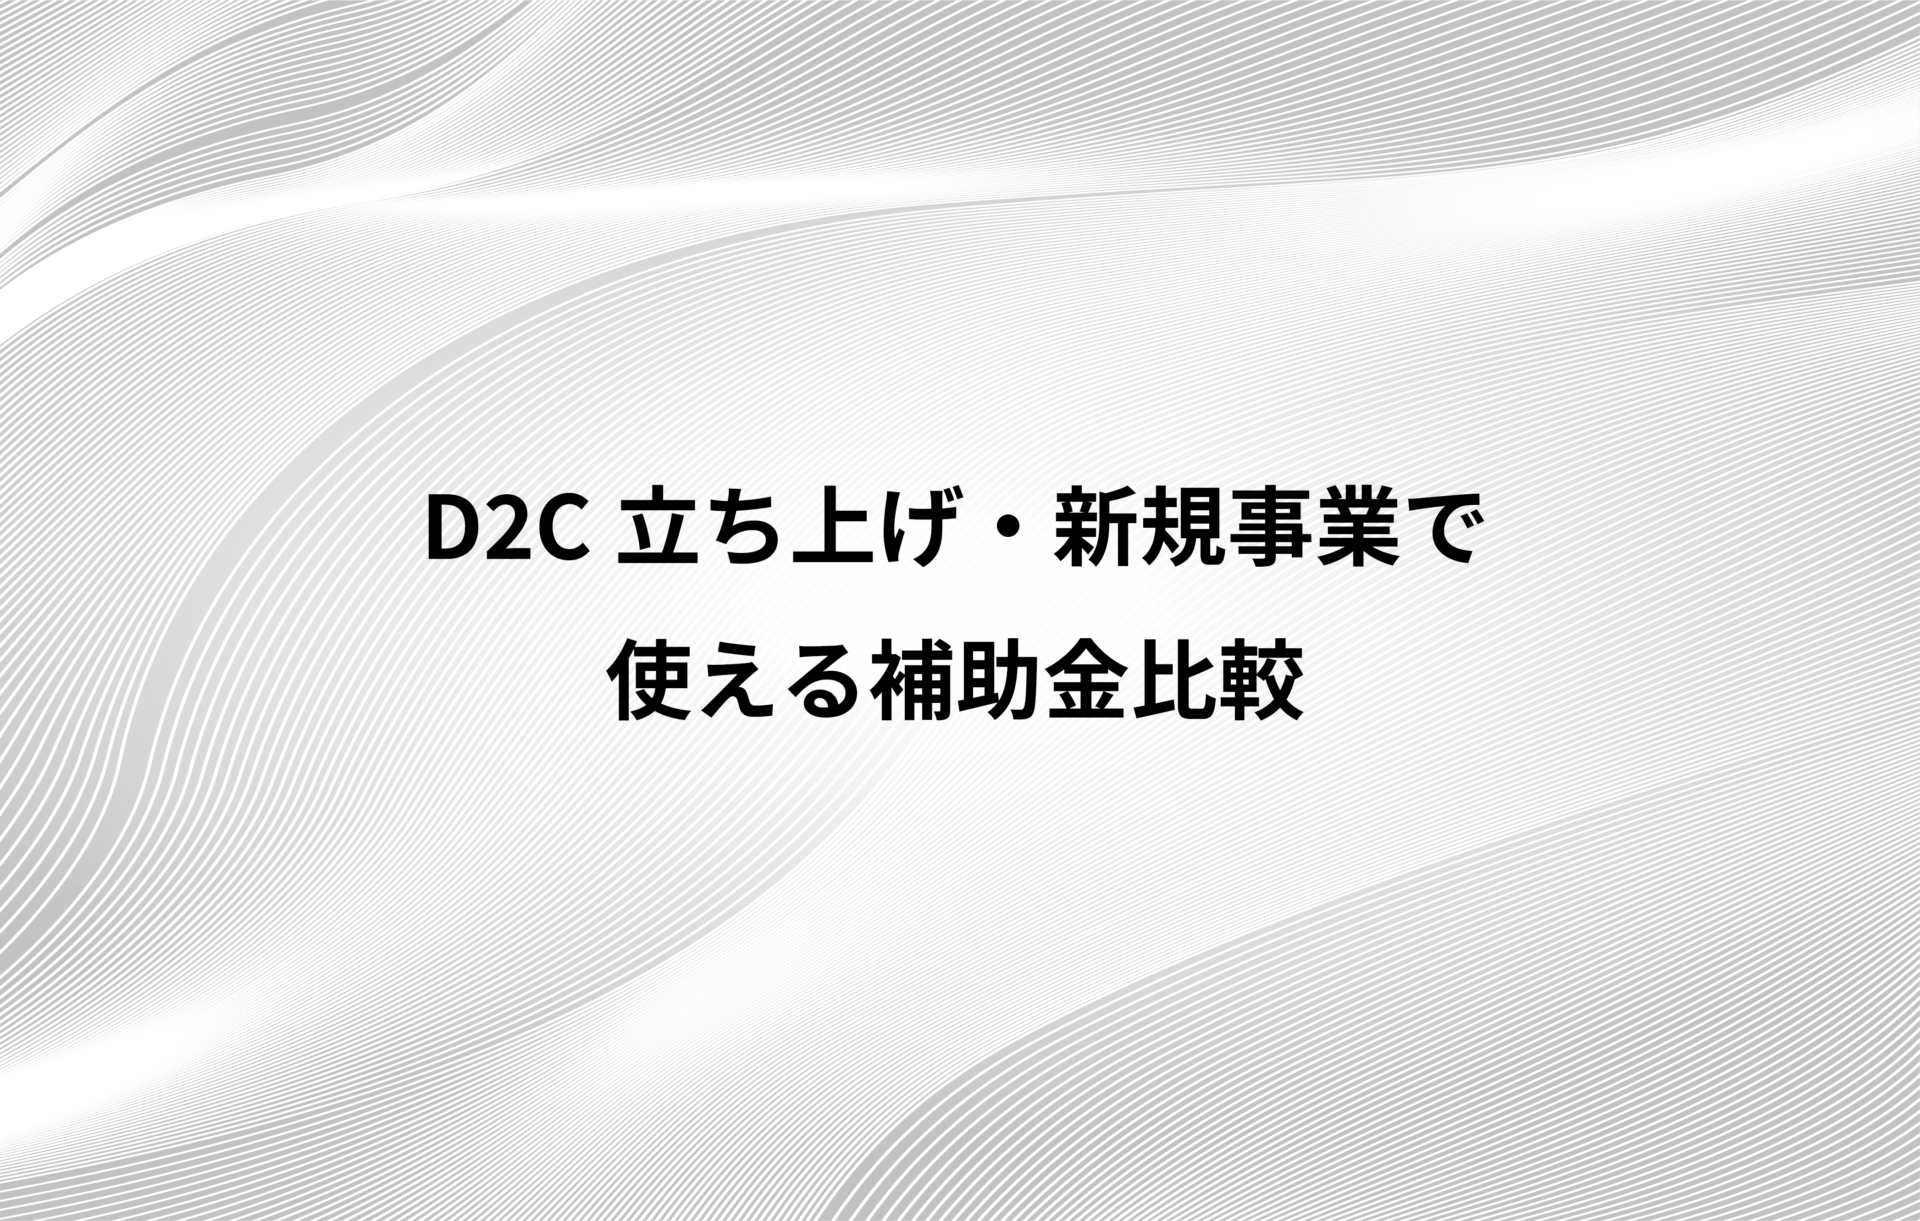 21年 決定版 D2c立ち上げ 新規事業で使える補助金比較 株式会社chipper チッパー